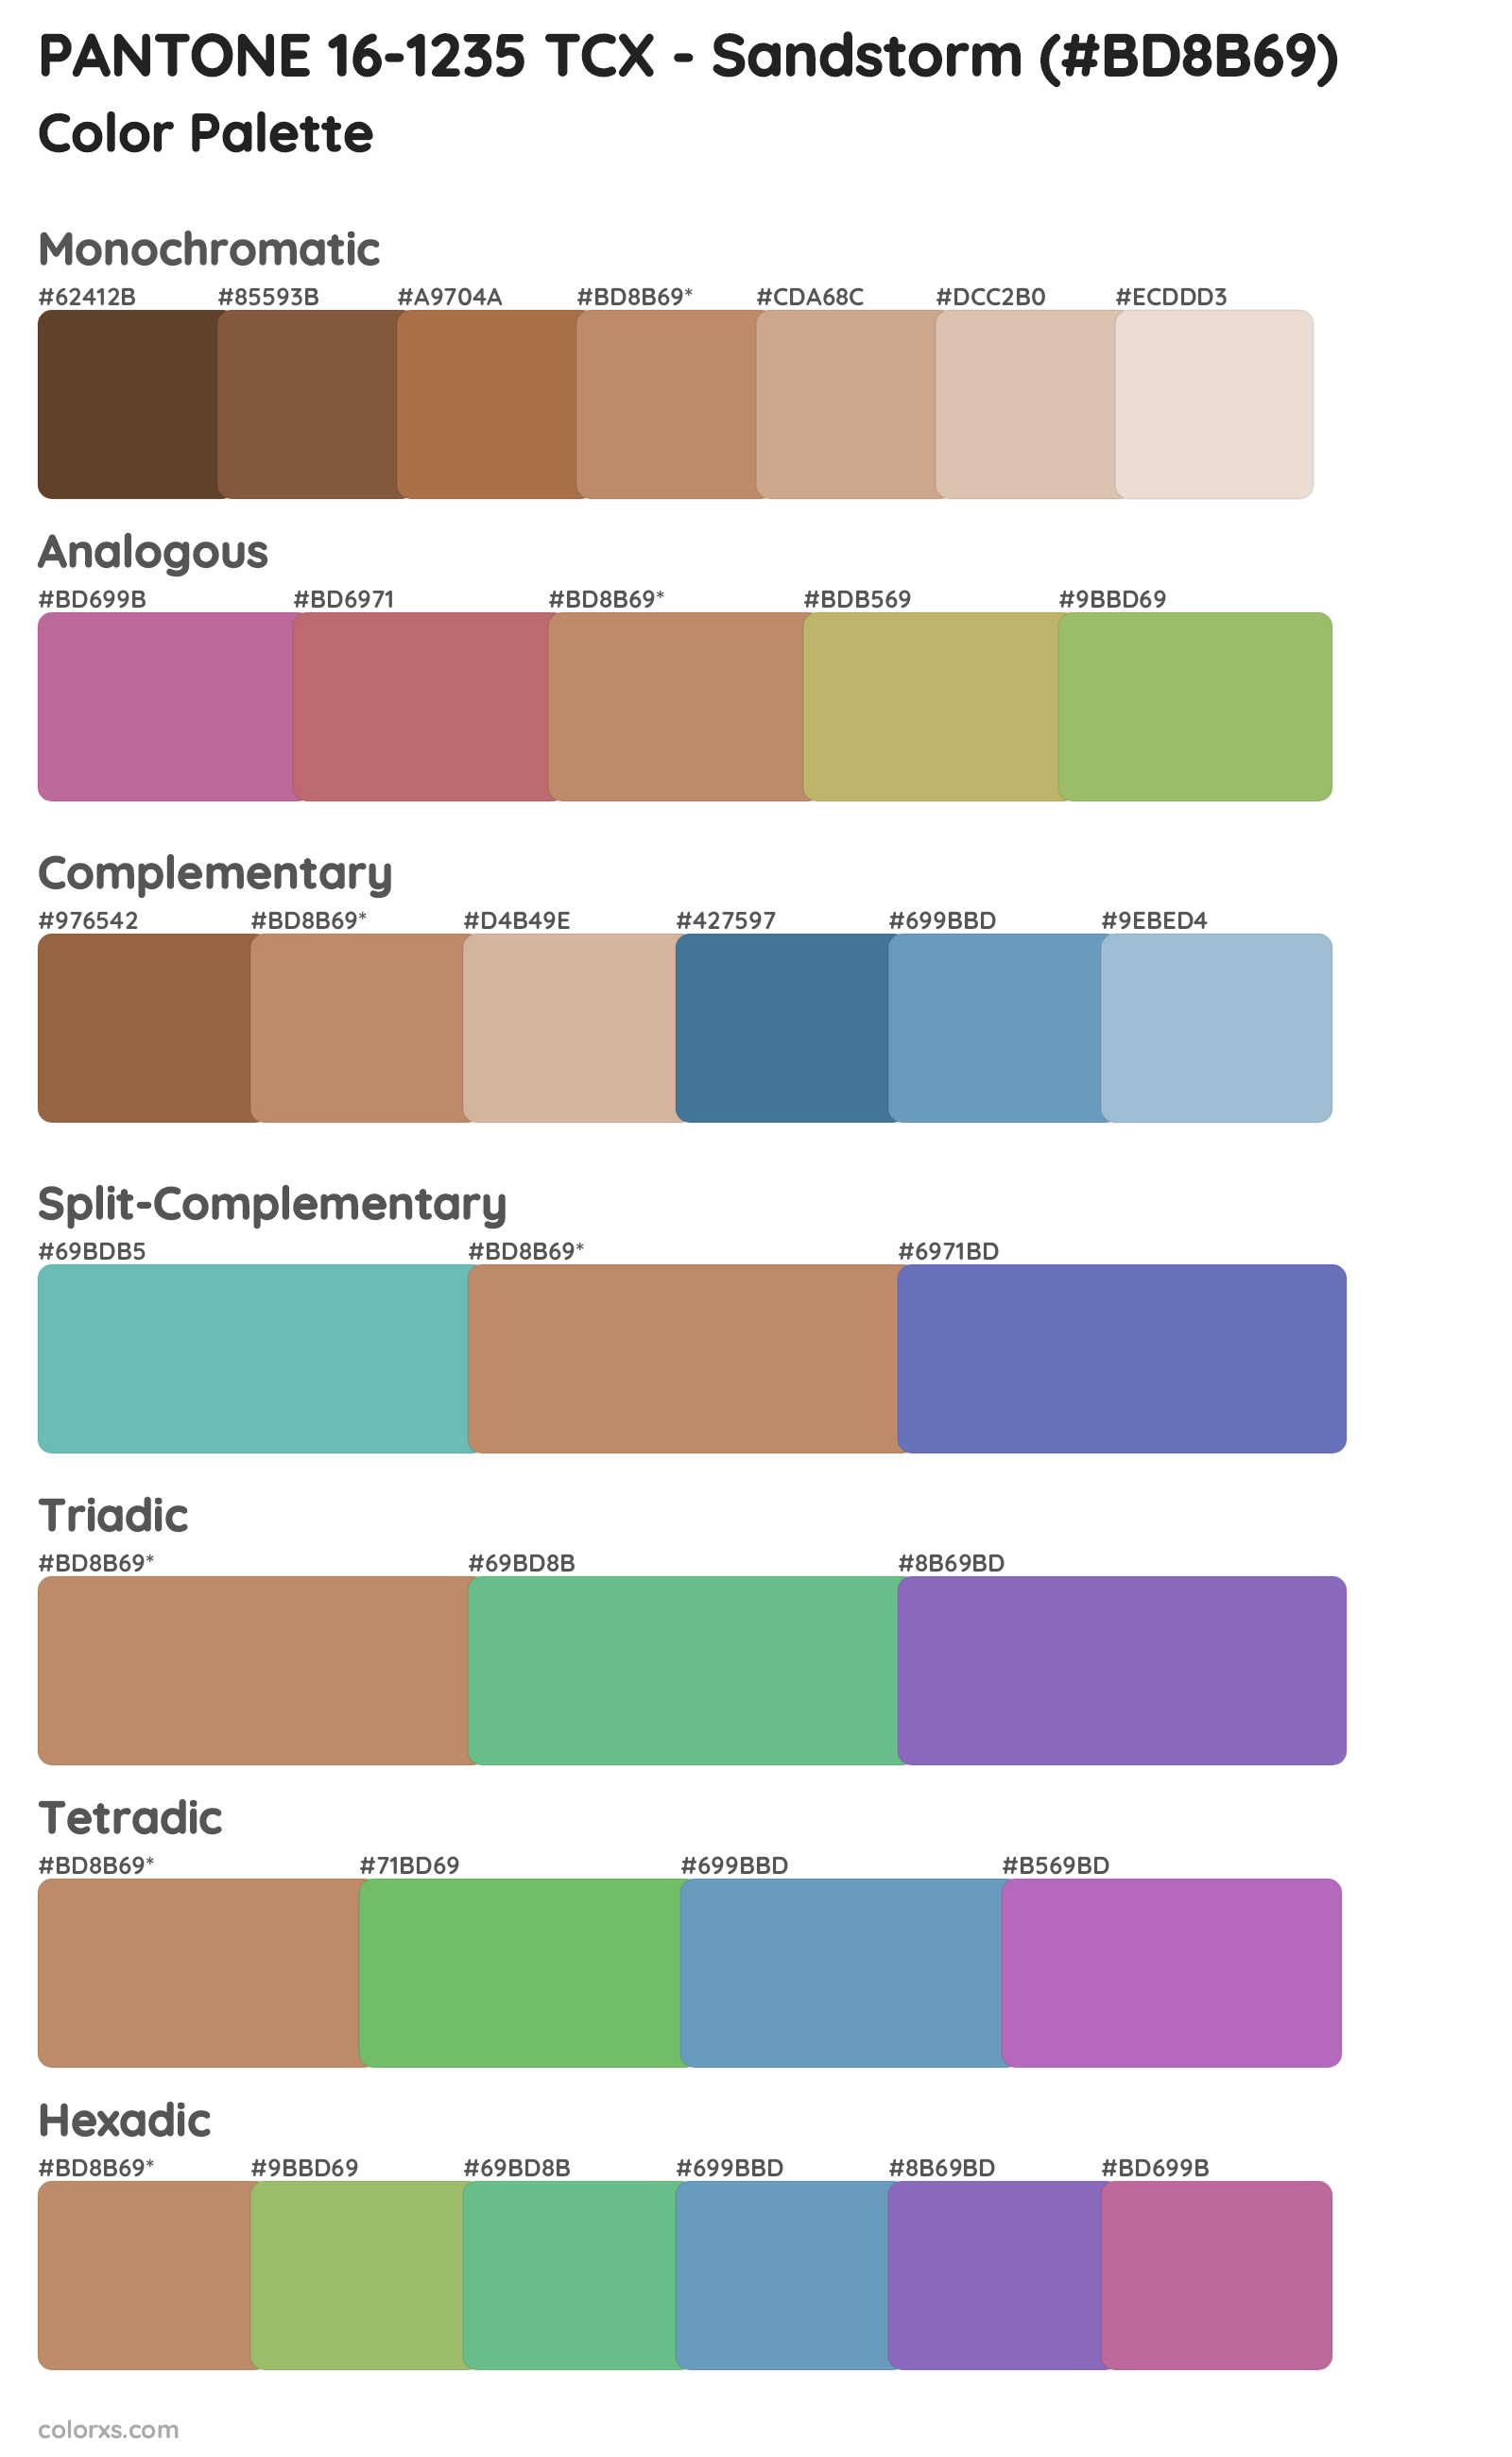 PANTONE 16-1235 TCX - Sandstorm Color Scheme Palettes